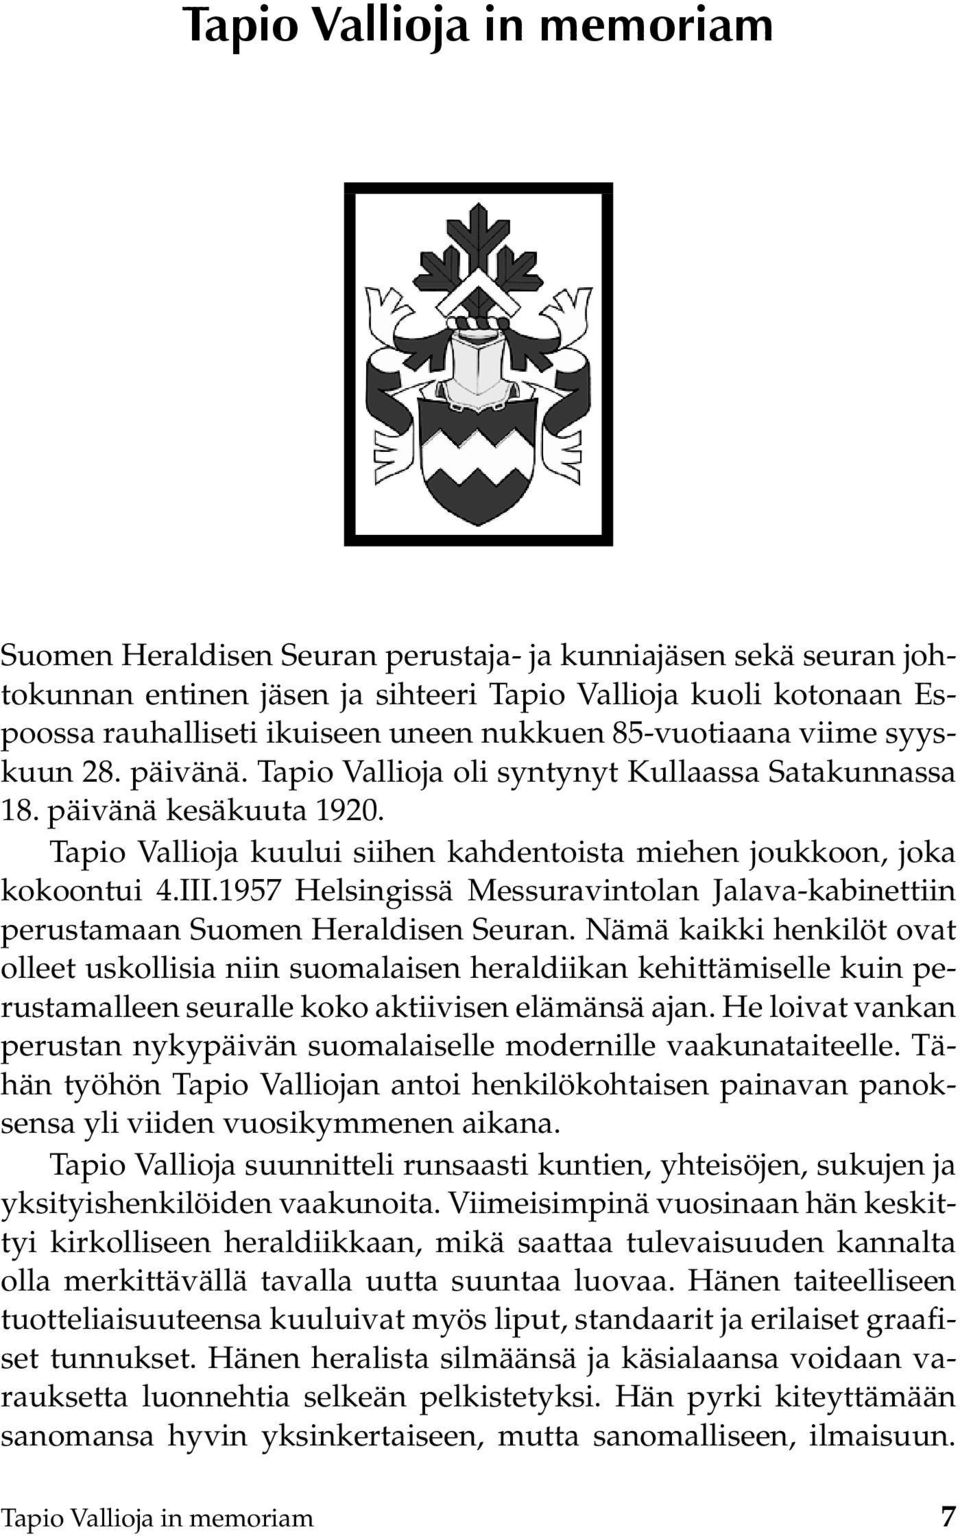 Tapio Vallioja kuului siihen kahdentoista miehen joukkoon, joka kokoontui 4.III.1957 Helsingissä Messuravintolan Jalava-kabinettiin perustamaan Suomen Heraldisen Seuran.